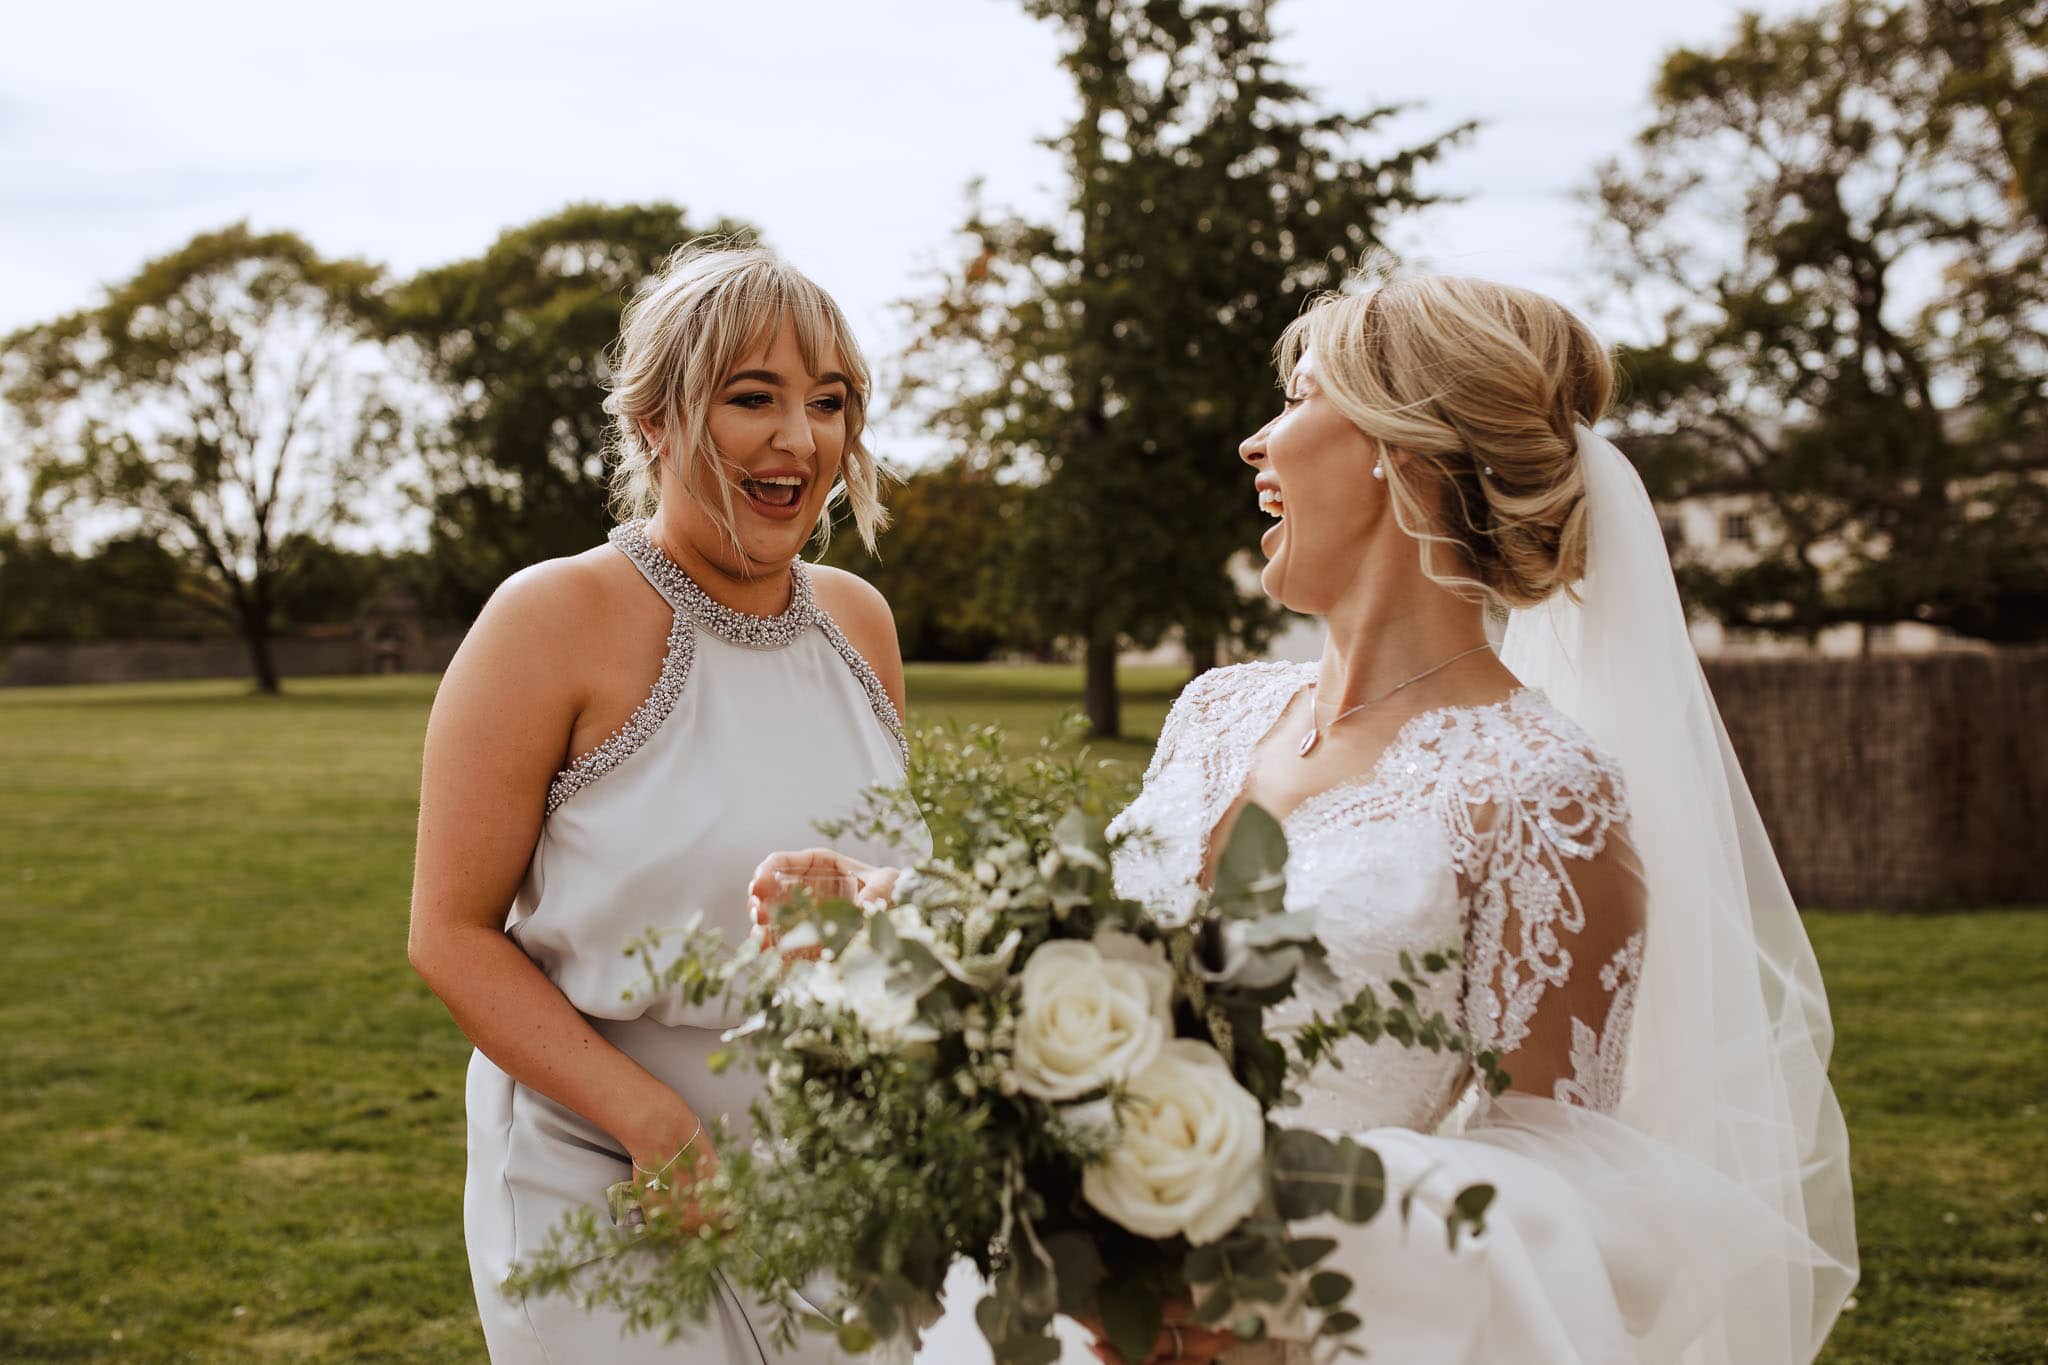 bride and bridesmaid sharing a joke